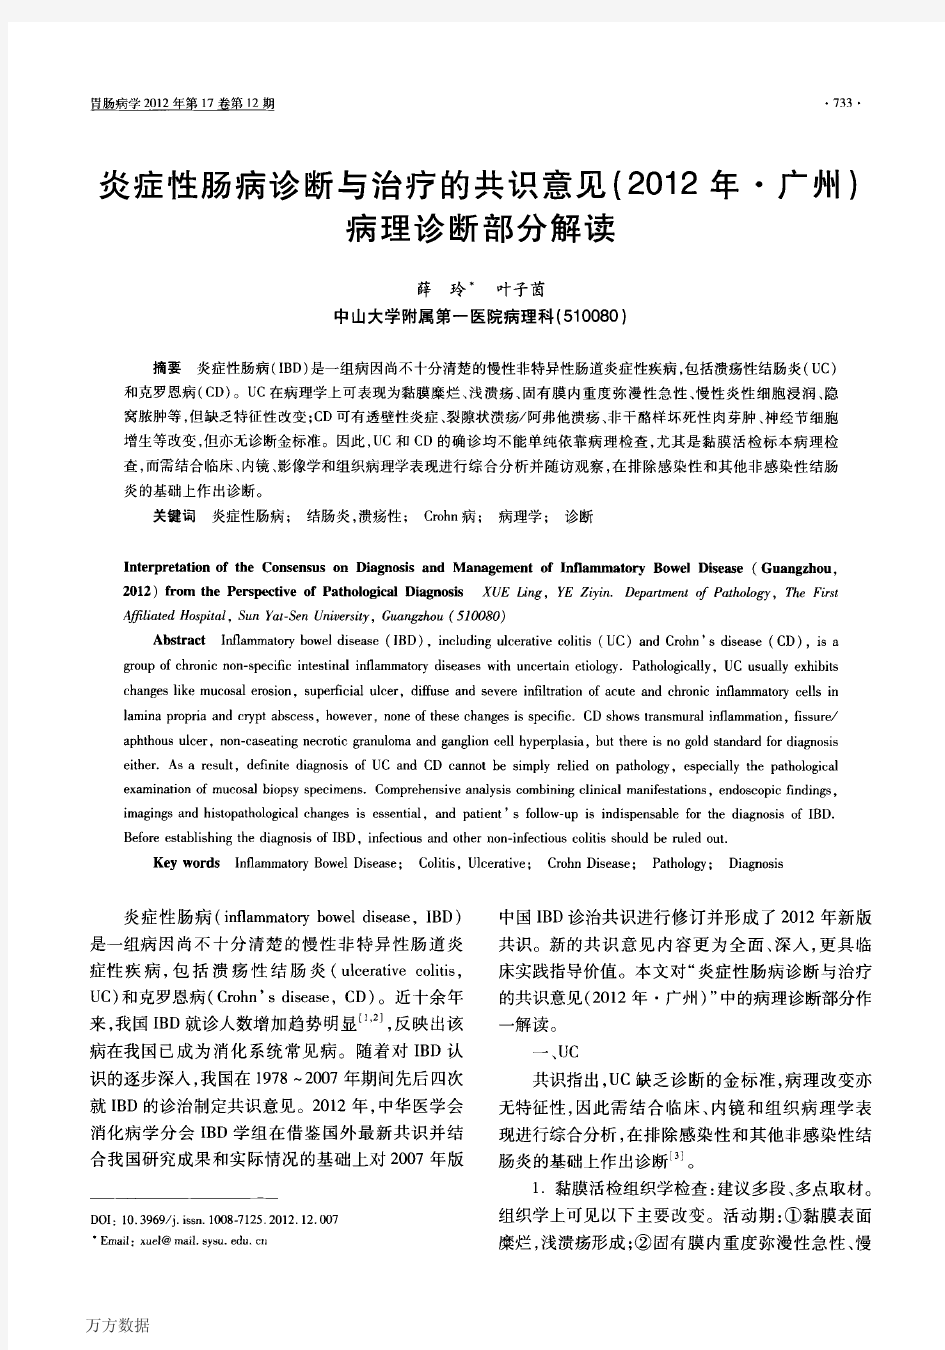 炎症性肠病诊断与治疗的共识意见2012年·广州病理诊断部分解读